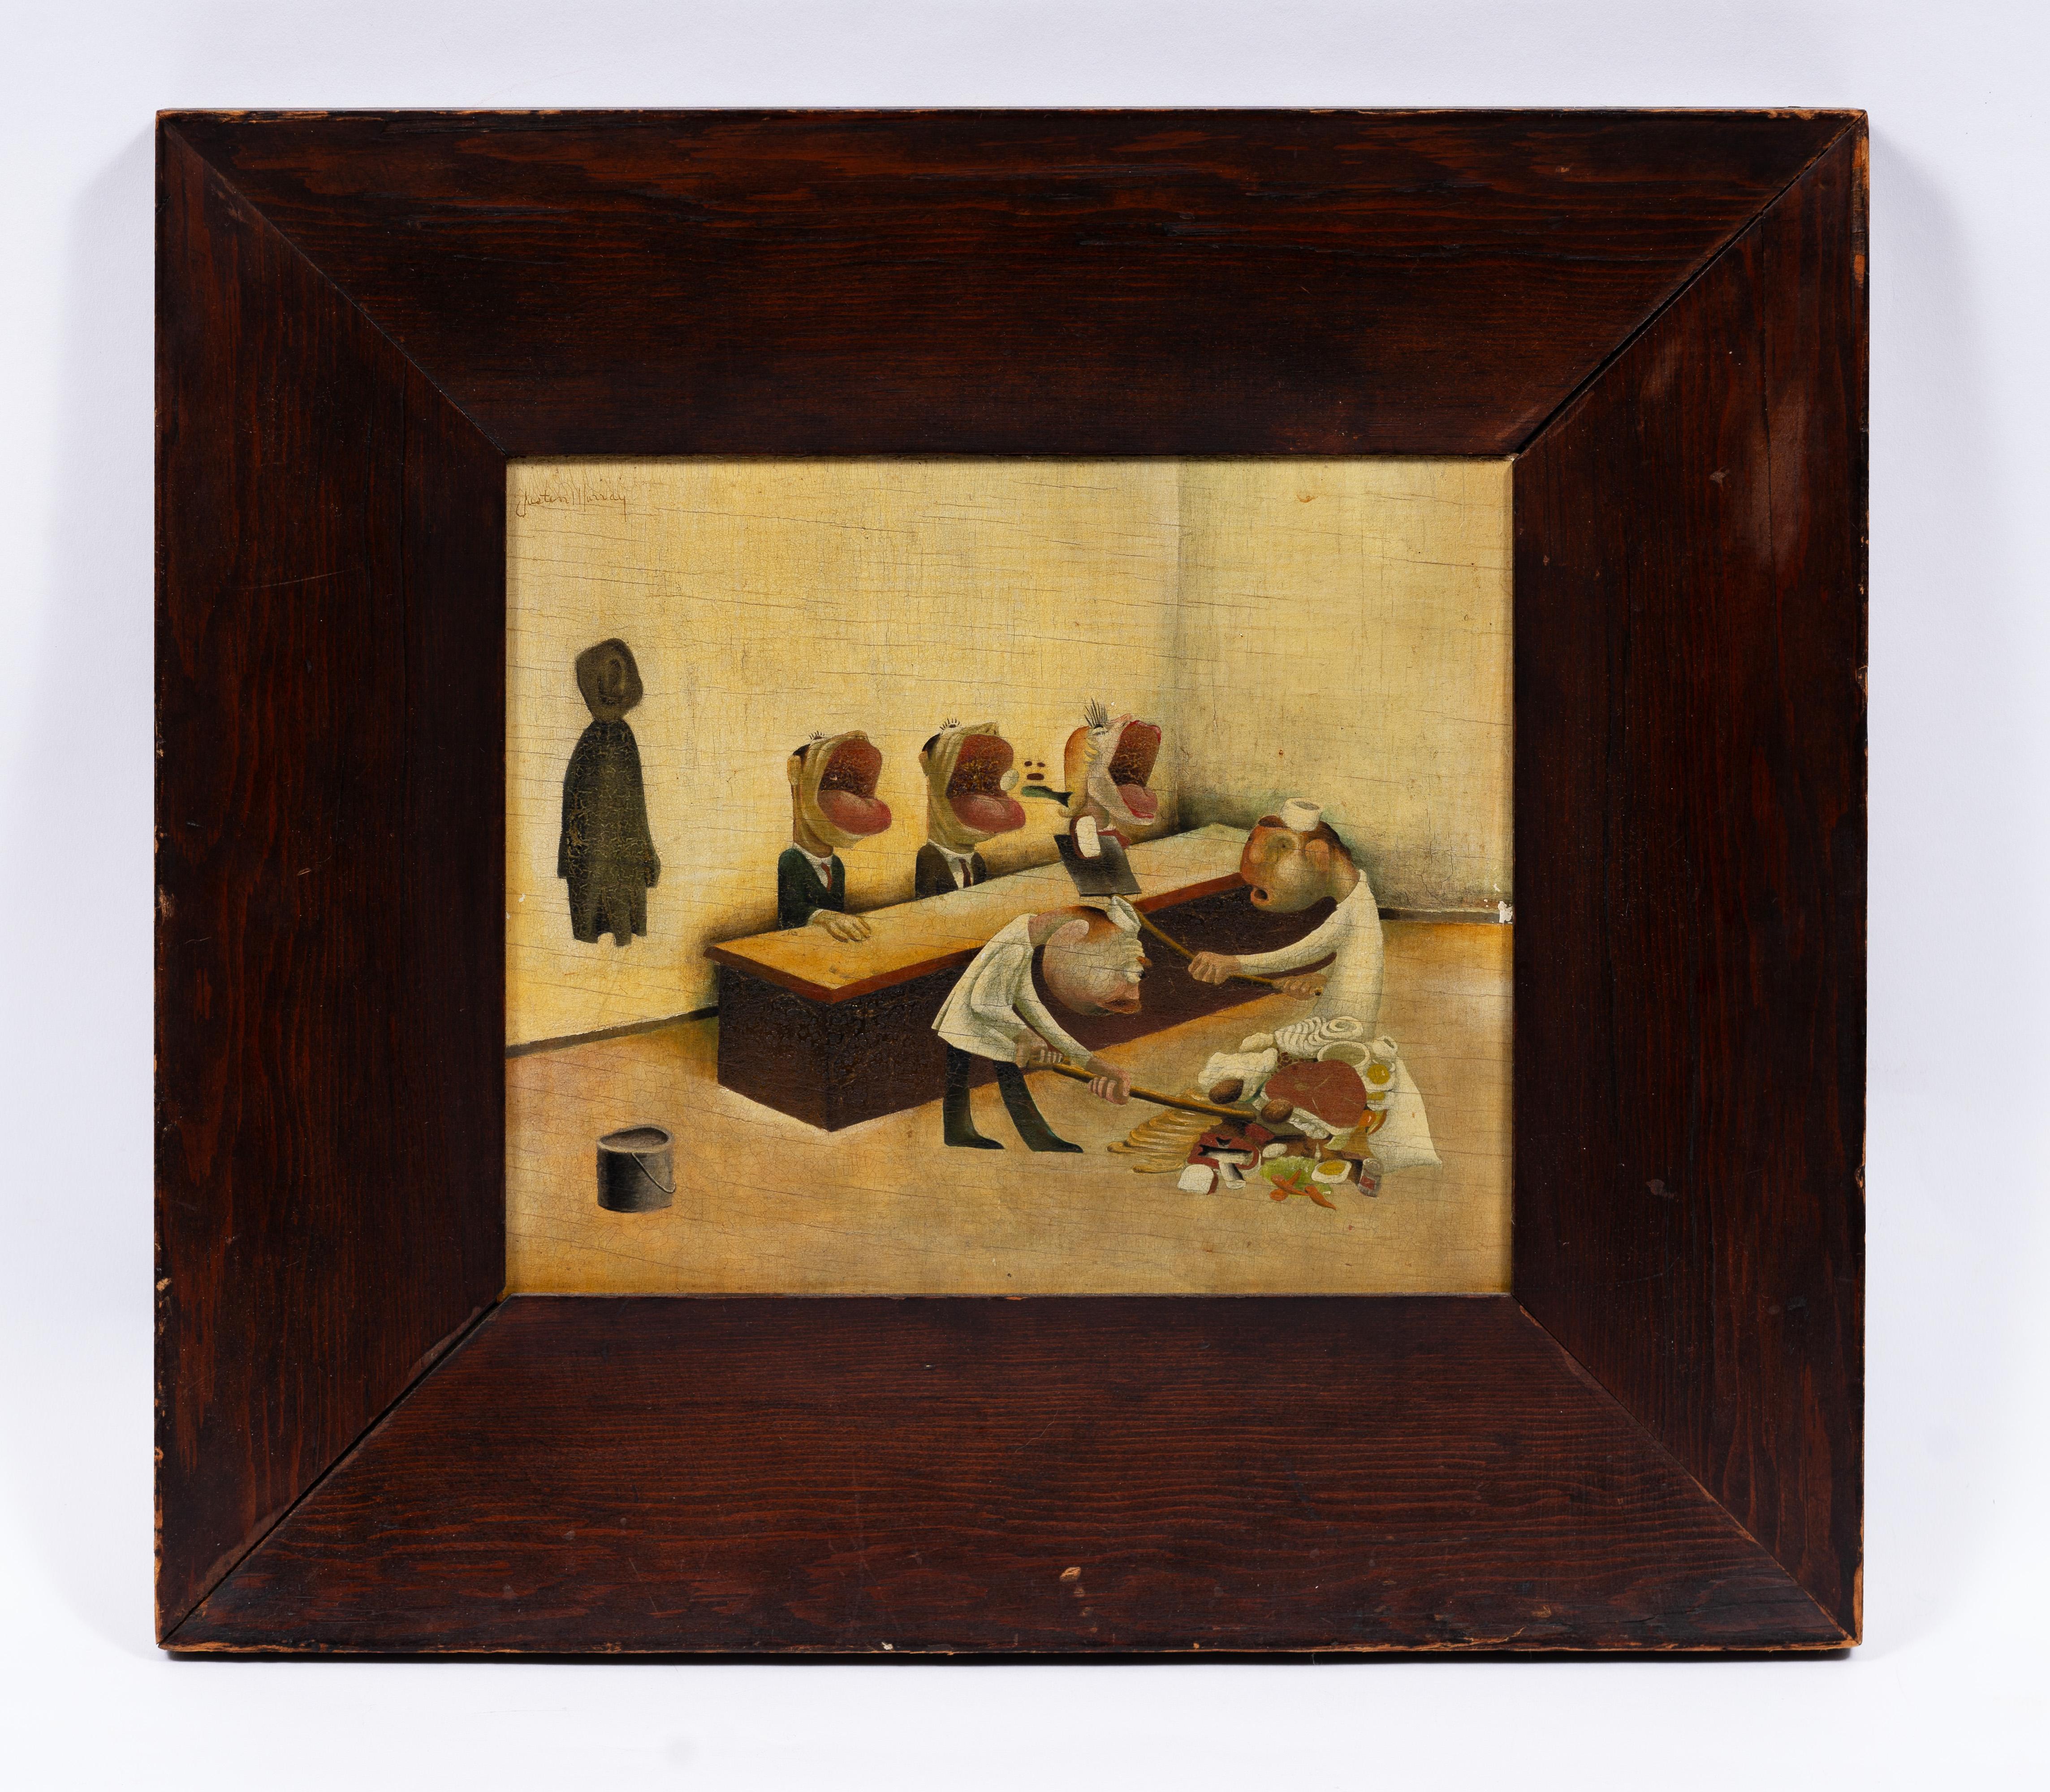 Antike amerikanische modernistische Interieurszene mit Figuren, die schaufelweise zu Mittag essen.  Eine wirklich gut gemalte und ungewöhnliche Szene.  Ein seltenes Frühwerk von Justine Murray (1912 - 1987).  Unterschrieben.  Ein weiteres